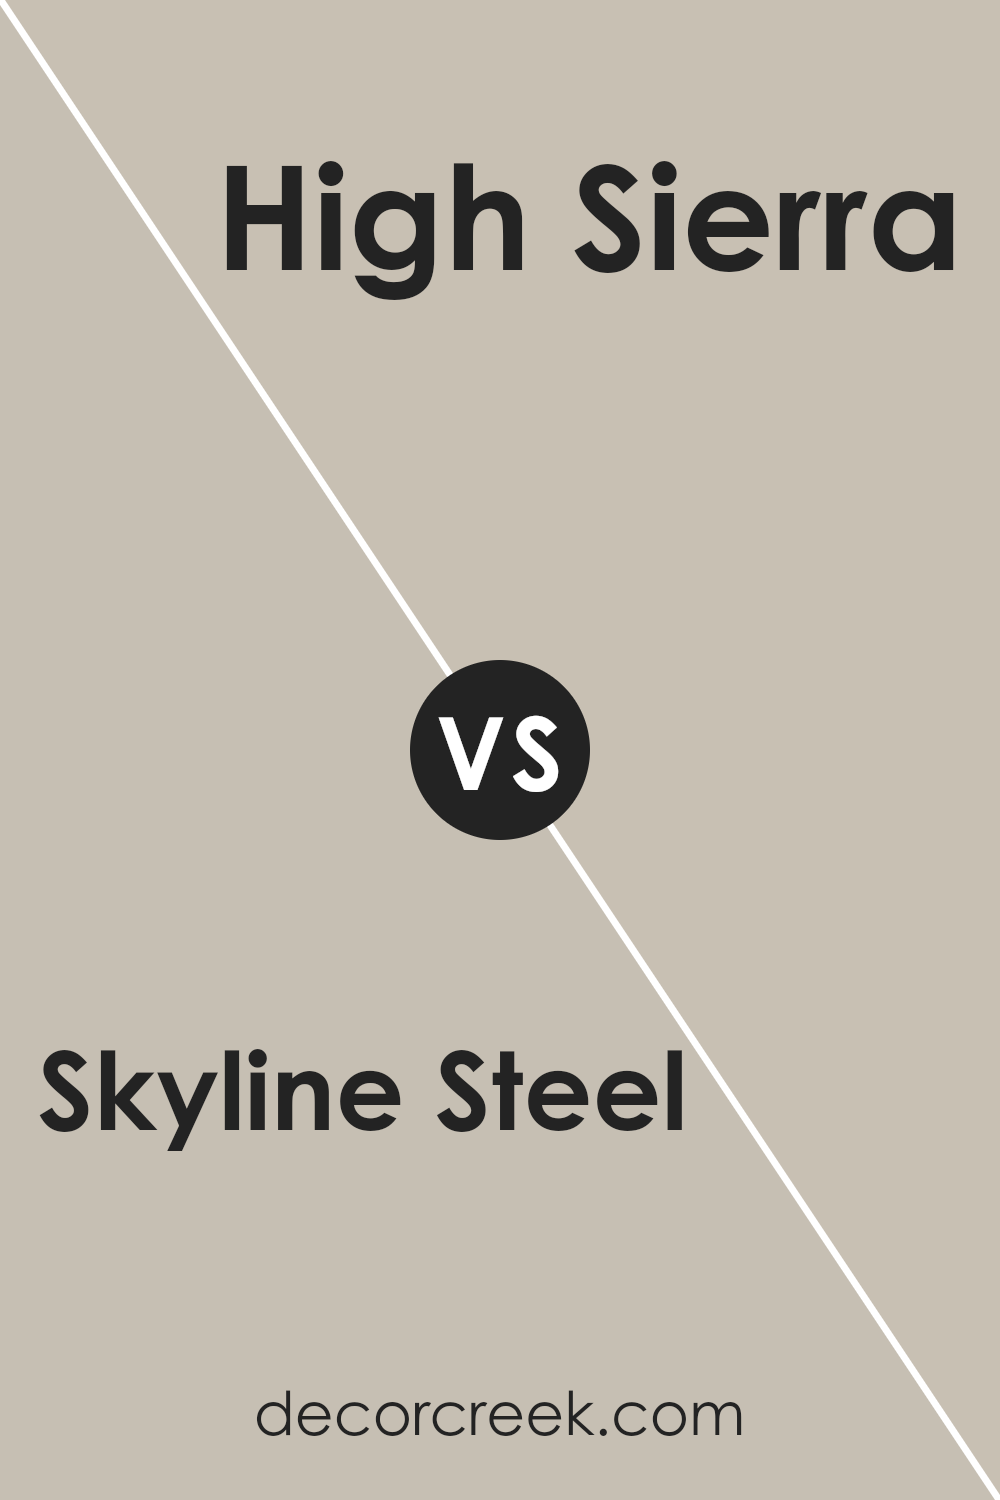 skyline_steel_sw_1015_vs_high_sierra_sw_9588